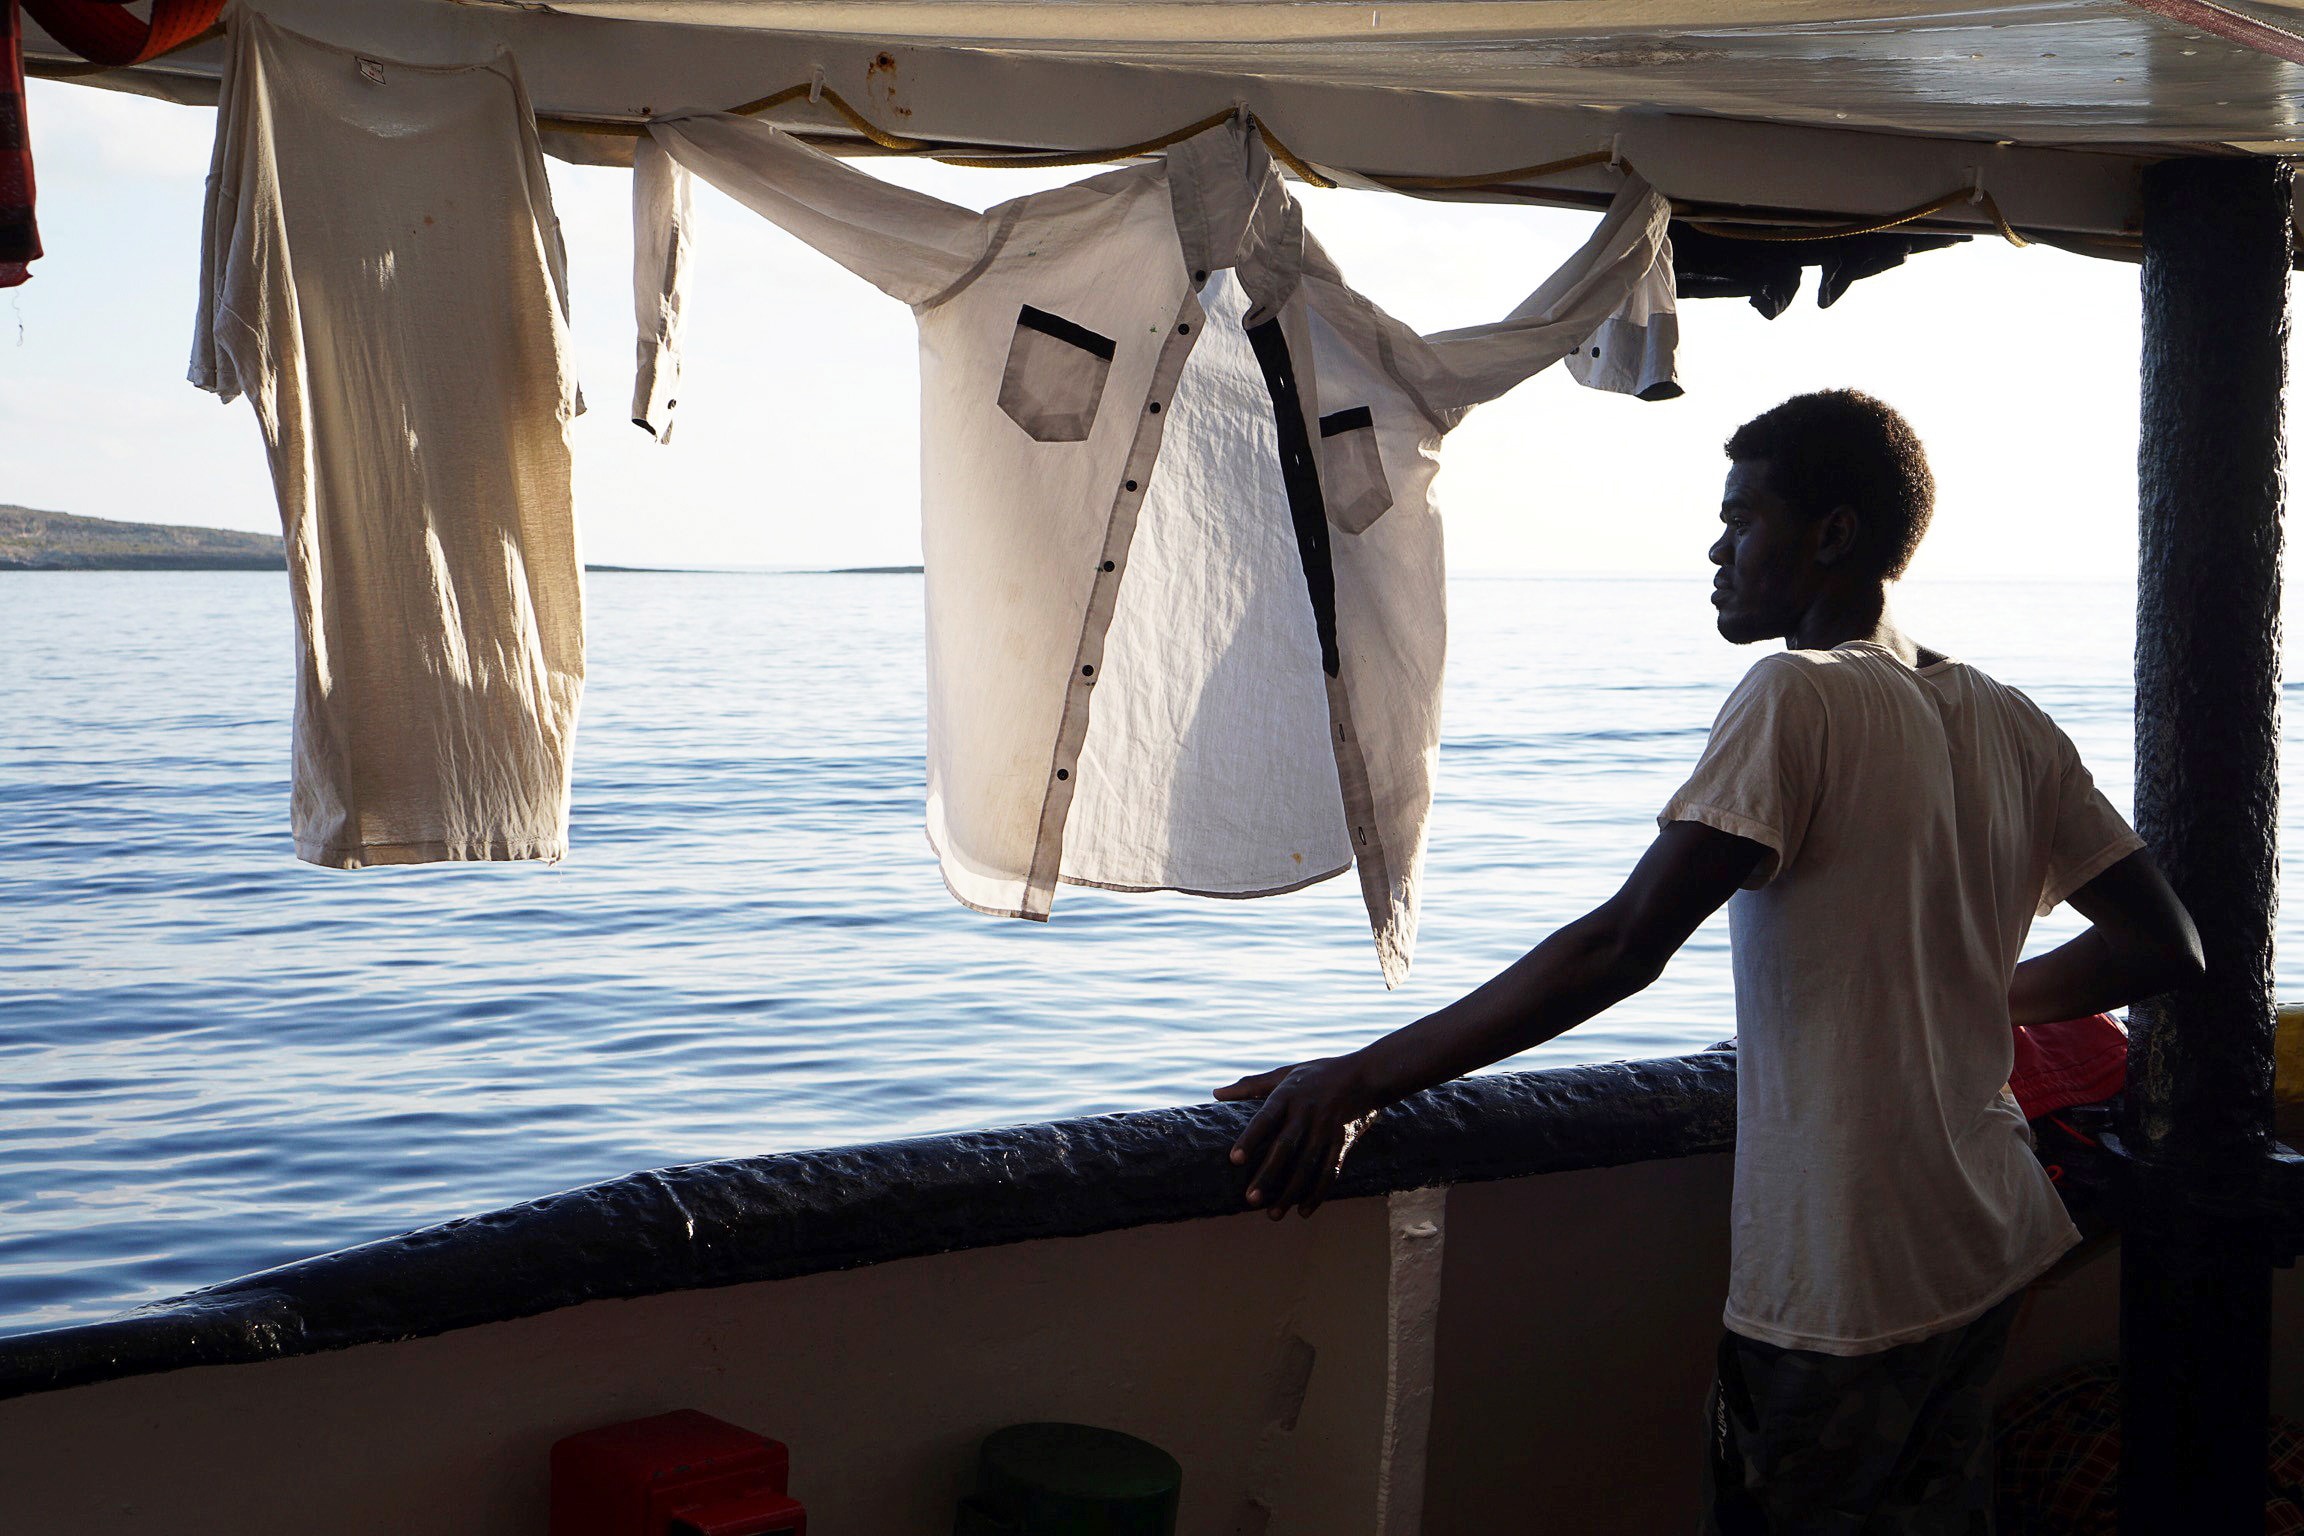 Spanje biedt aan reddingsschip met meer dan 100 migranten op te vangen, hulporganisatie weigert